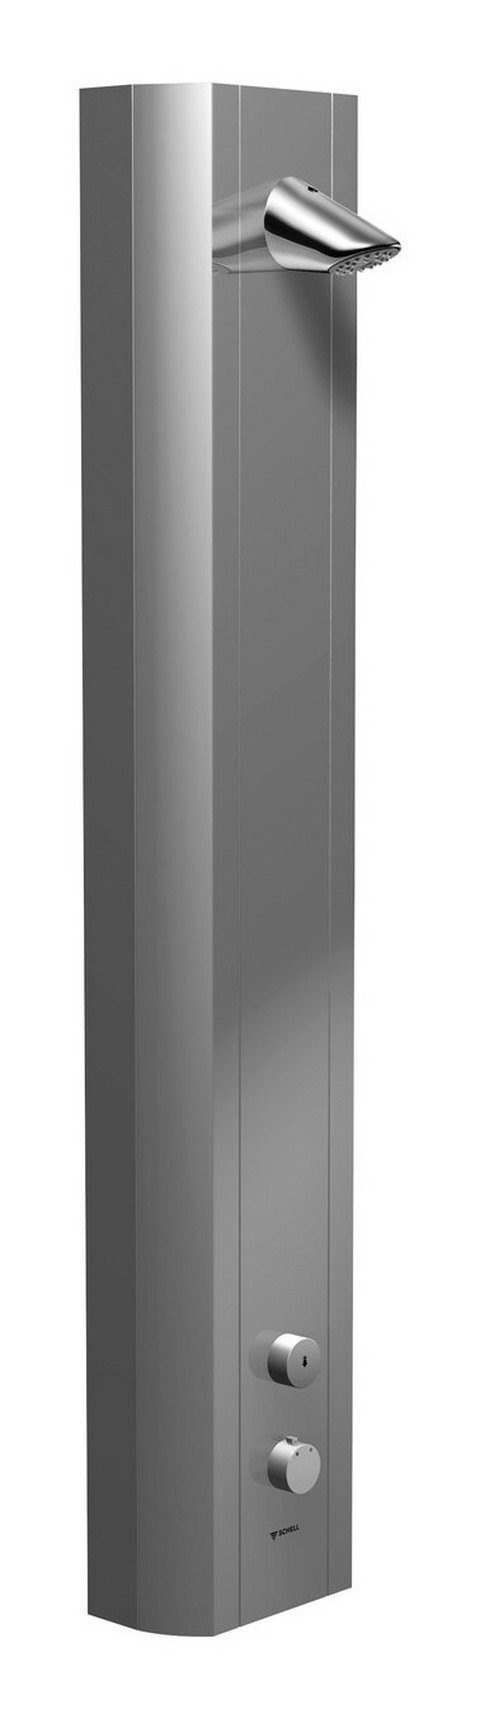 Schell Duschsäule Linus, Höhe 120 cm, Duschpaneel Thermostat m. Duschkopf COMFORT Selbstschluss Alu-eloxiert